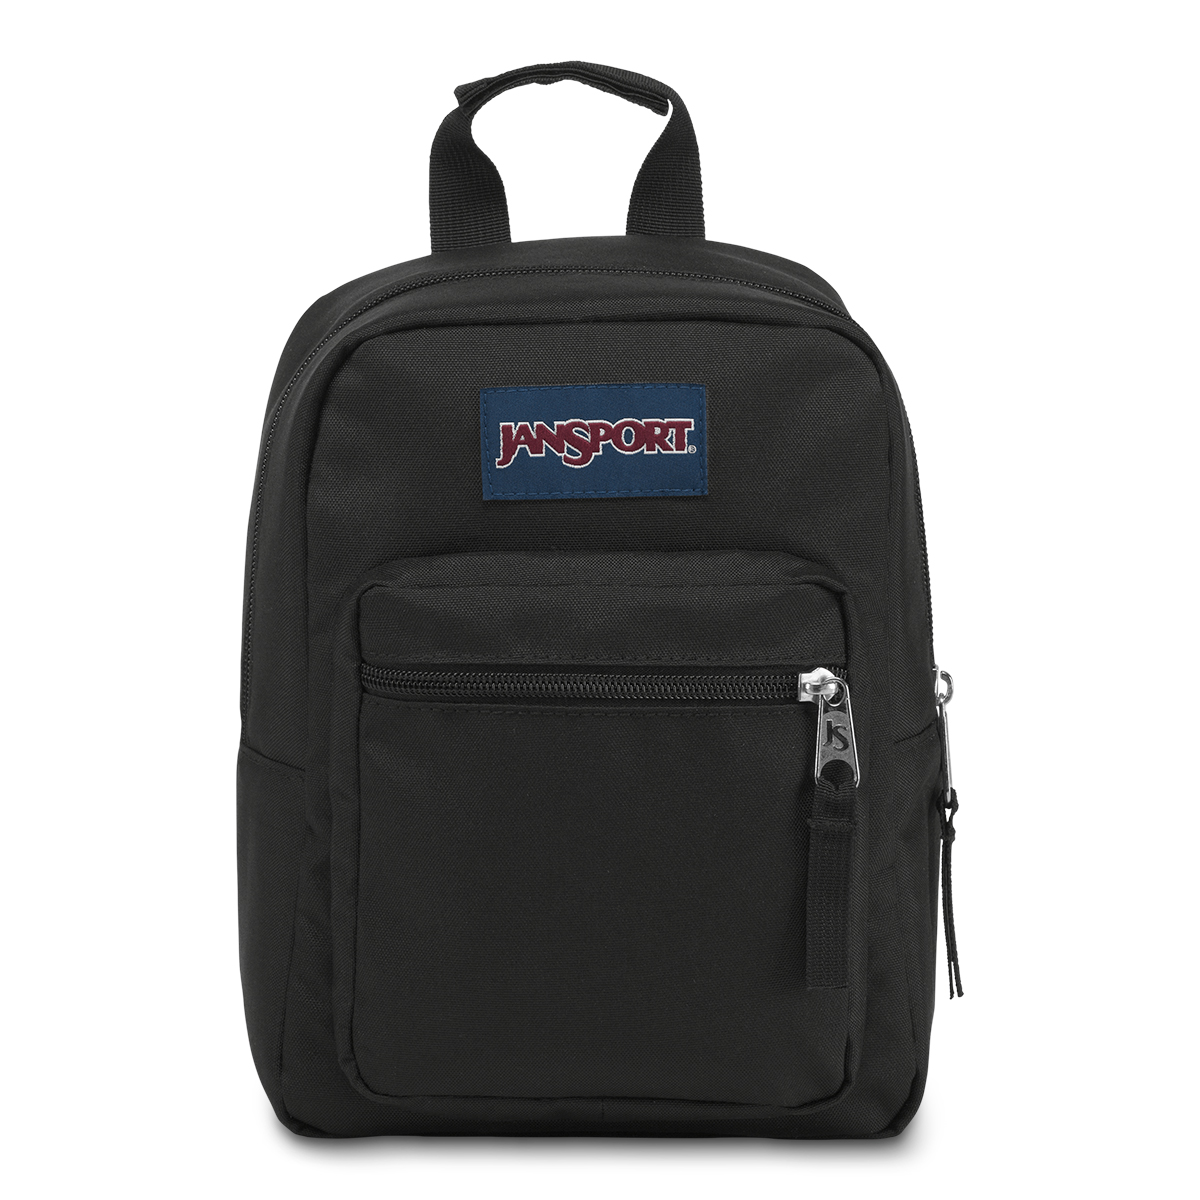 JanSport(R) Big Break Lunch Bag - Black